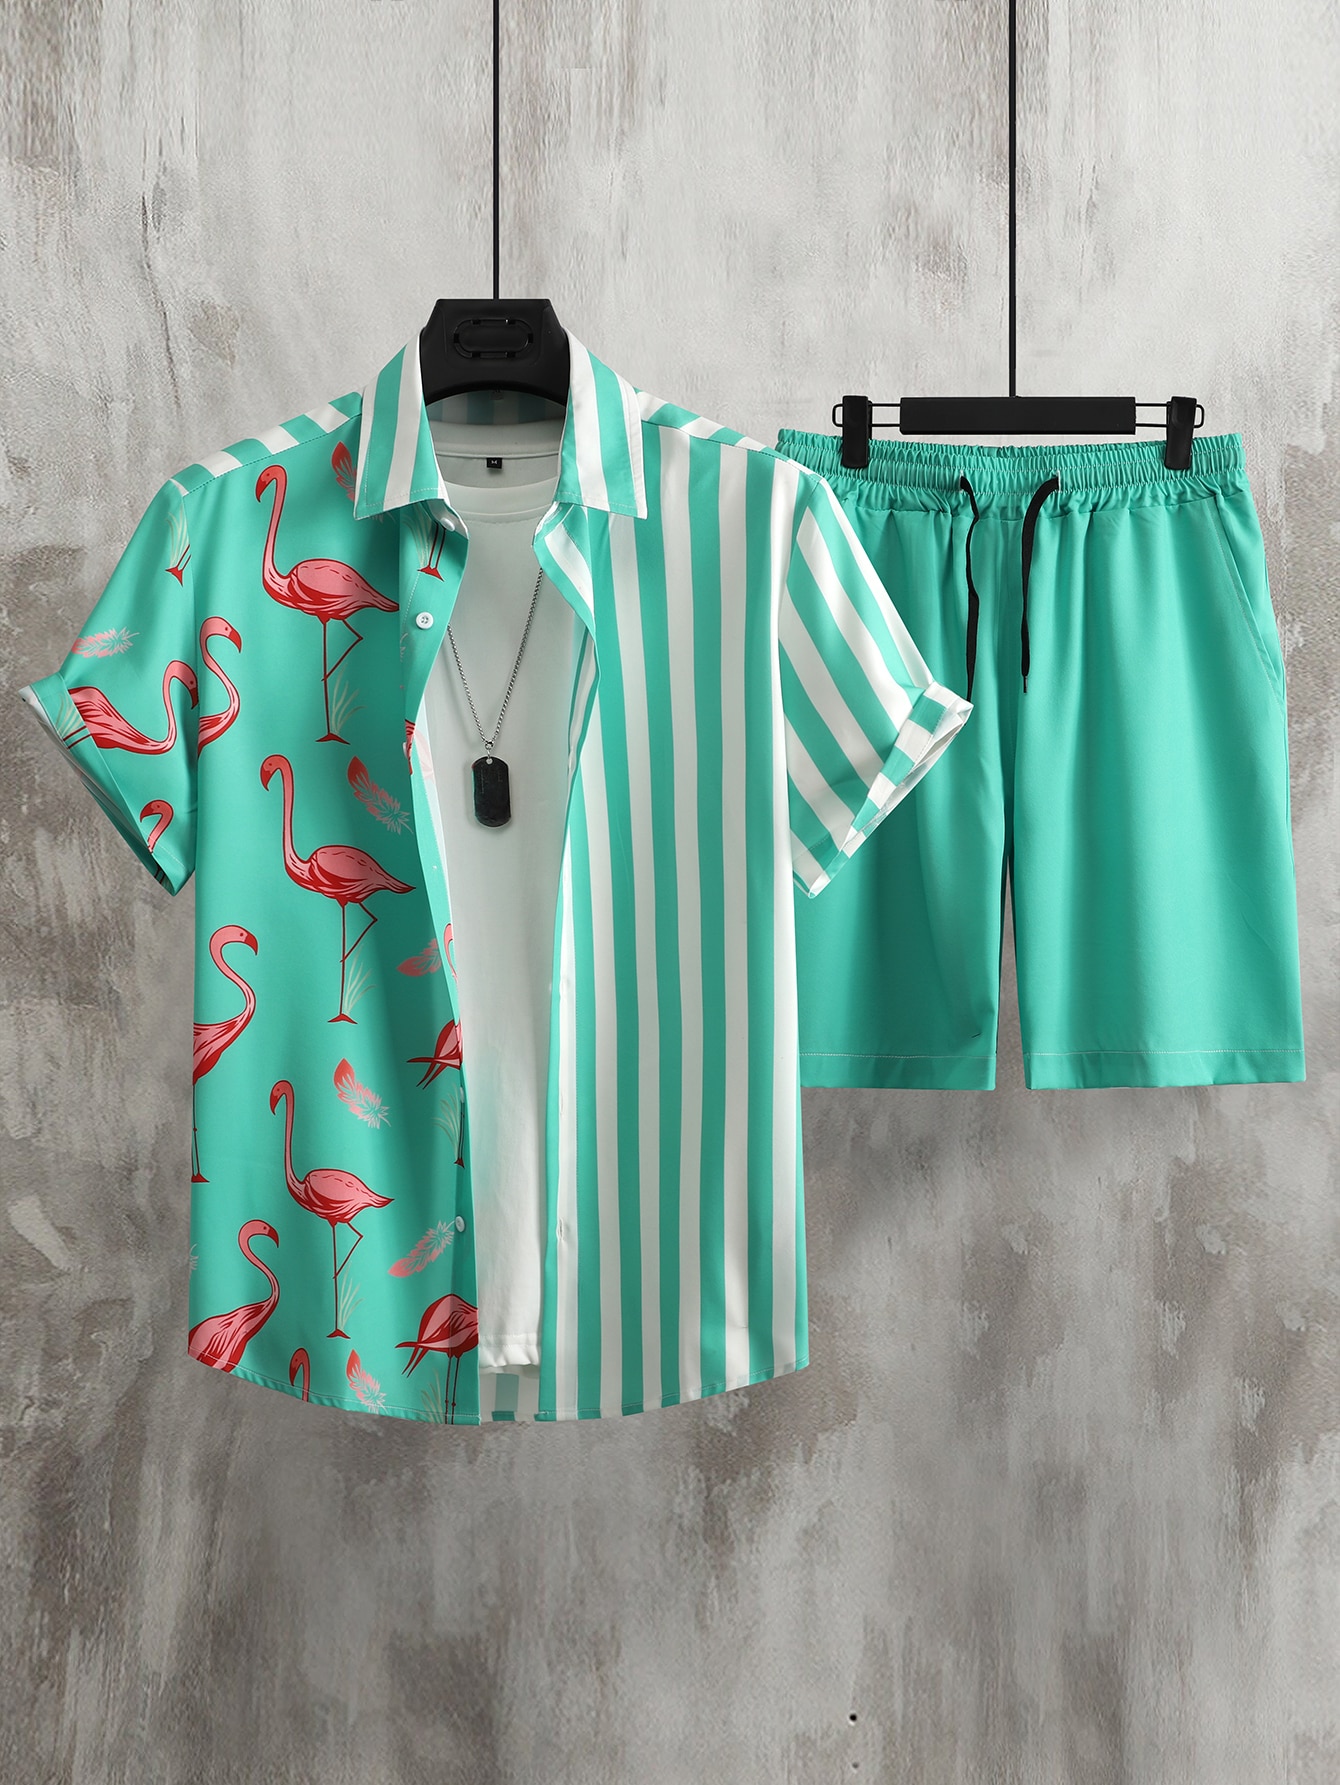 Мужской комплект из рубашки и шорт с короткими рукавами в полоску с принтом фламинго Manfinity RSRT, мятно-зеленый